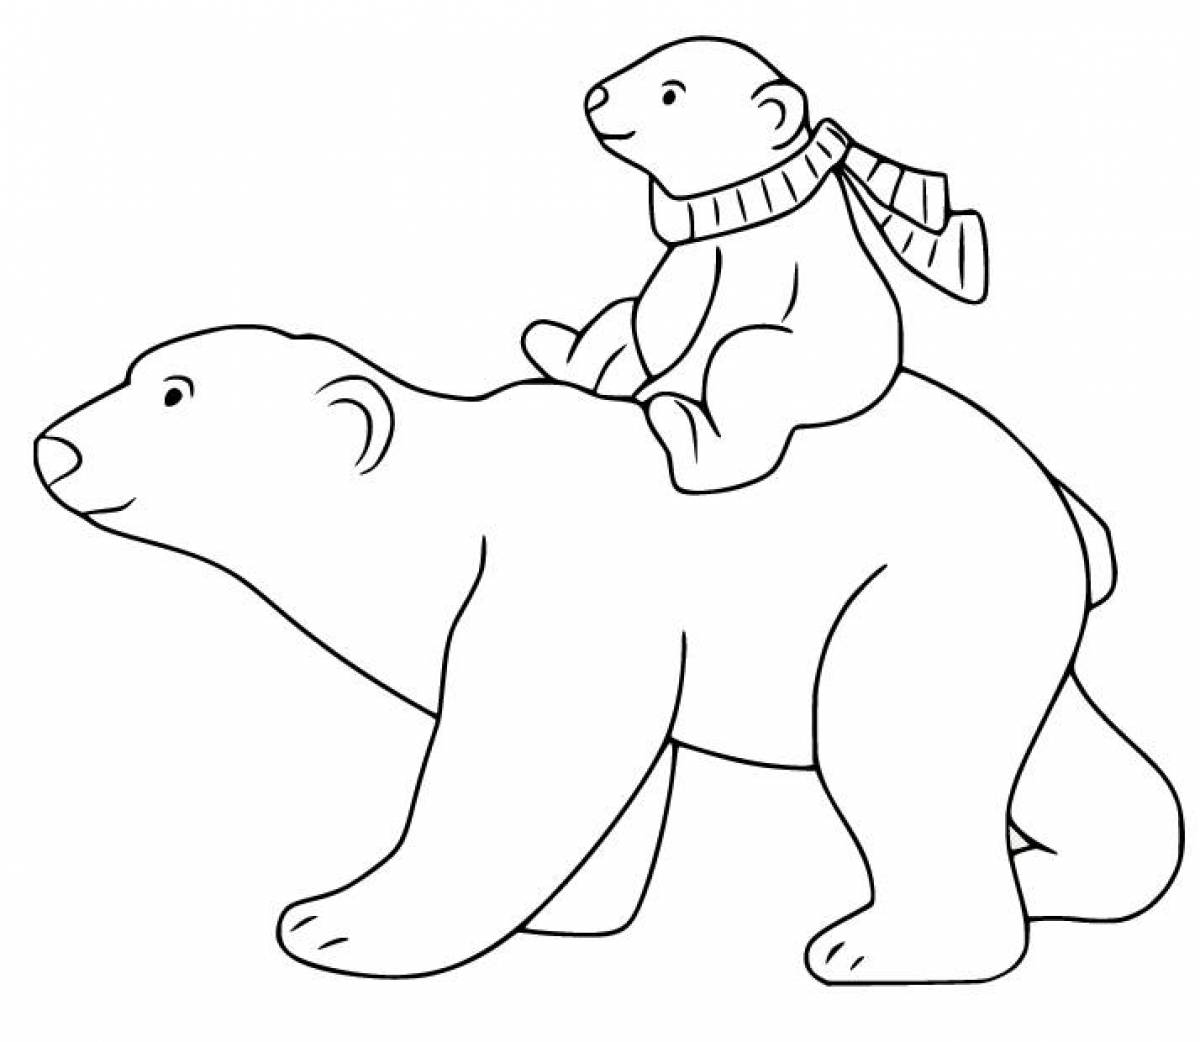 Fun polar bear coloring book for kids